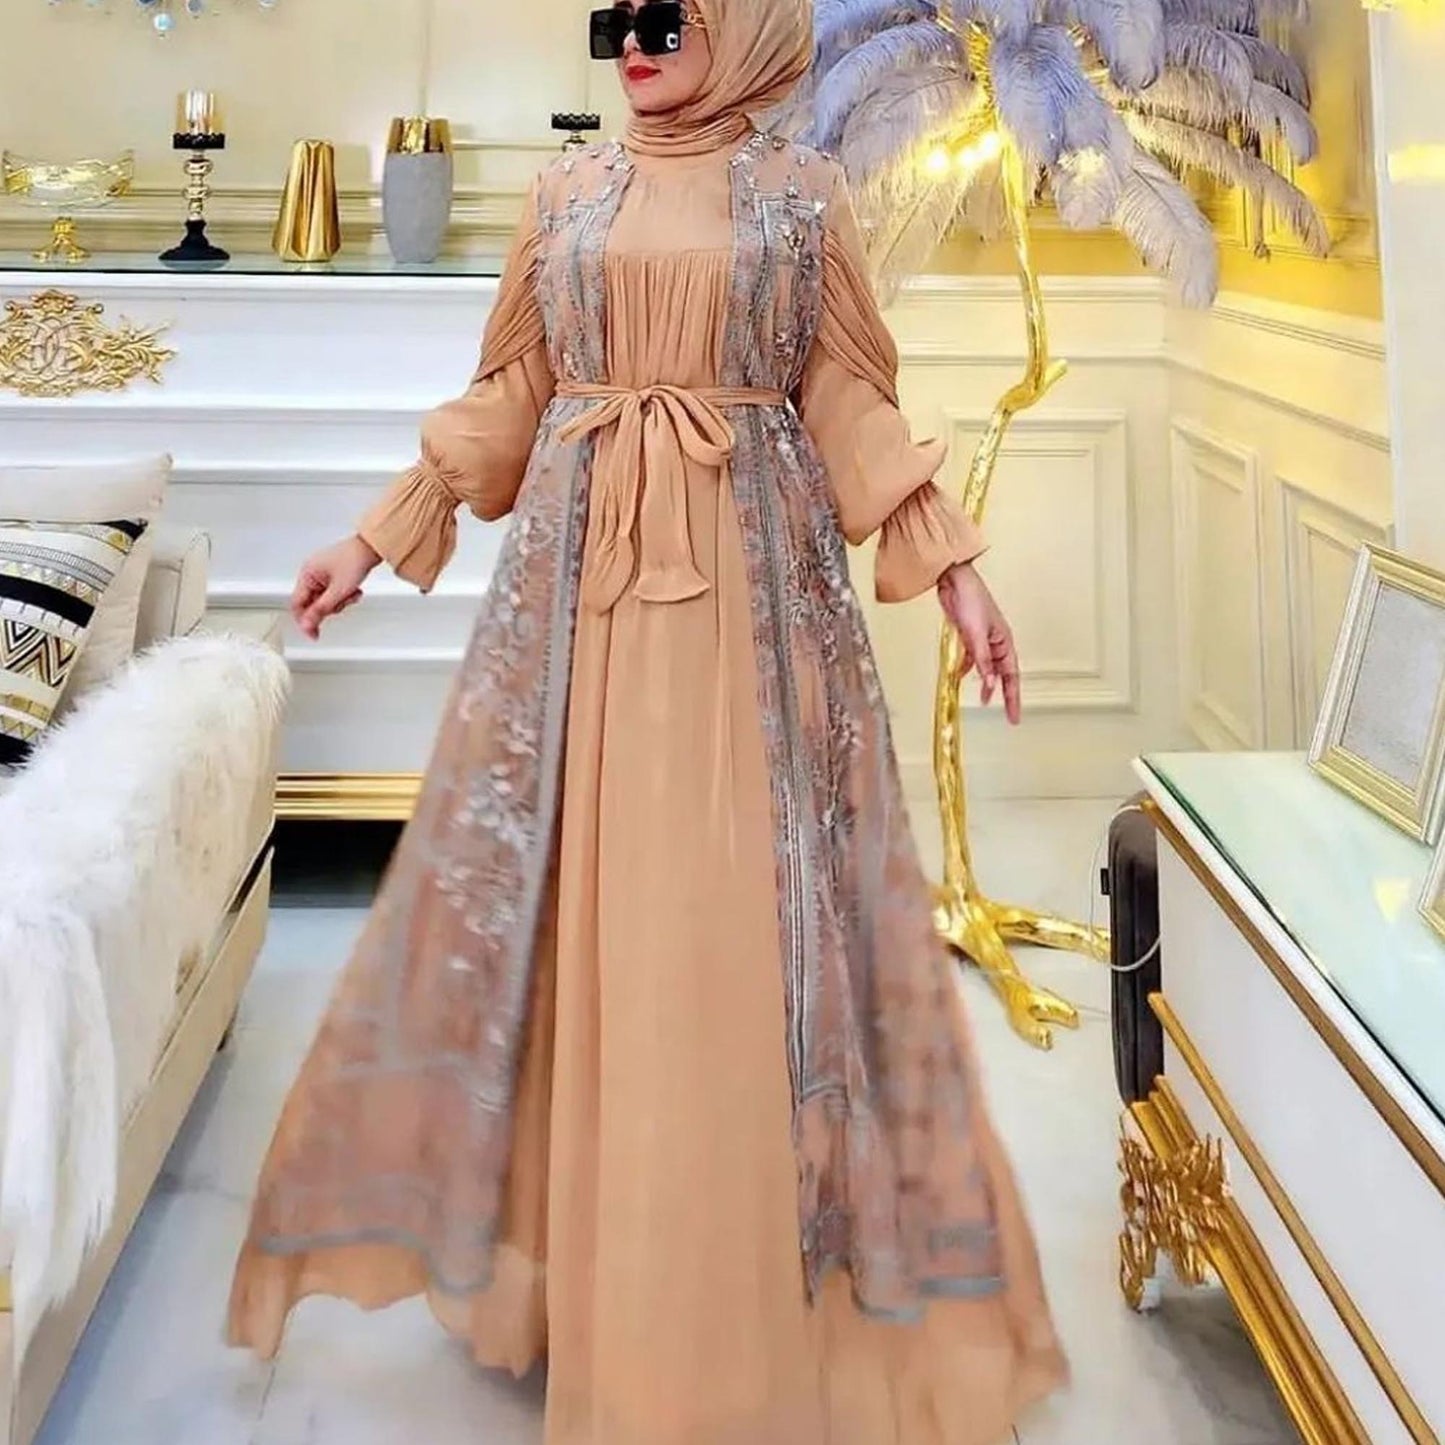 Zhavira Gamis Jurk - Babydoll Model met een prachtige Brukat Touch, Muslimah mode, moslimvrouwen, damesjurk, Gamis, islamitische jurk